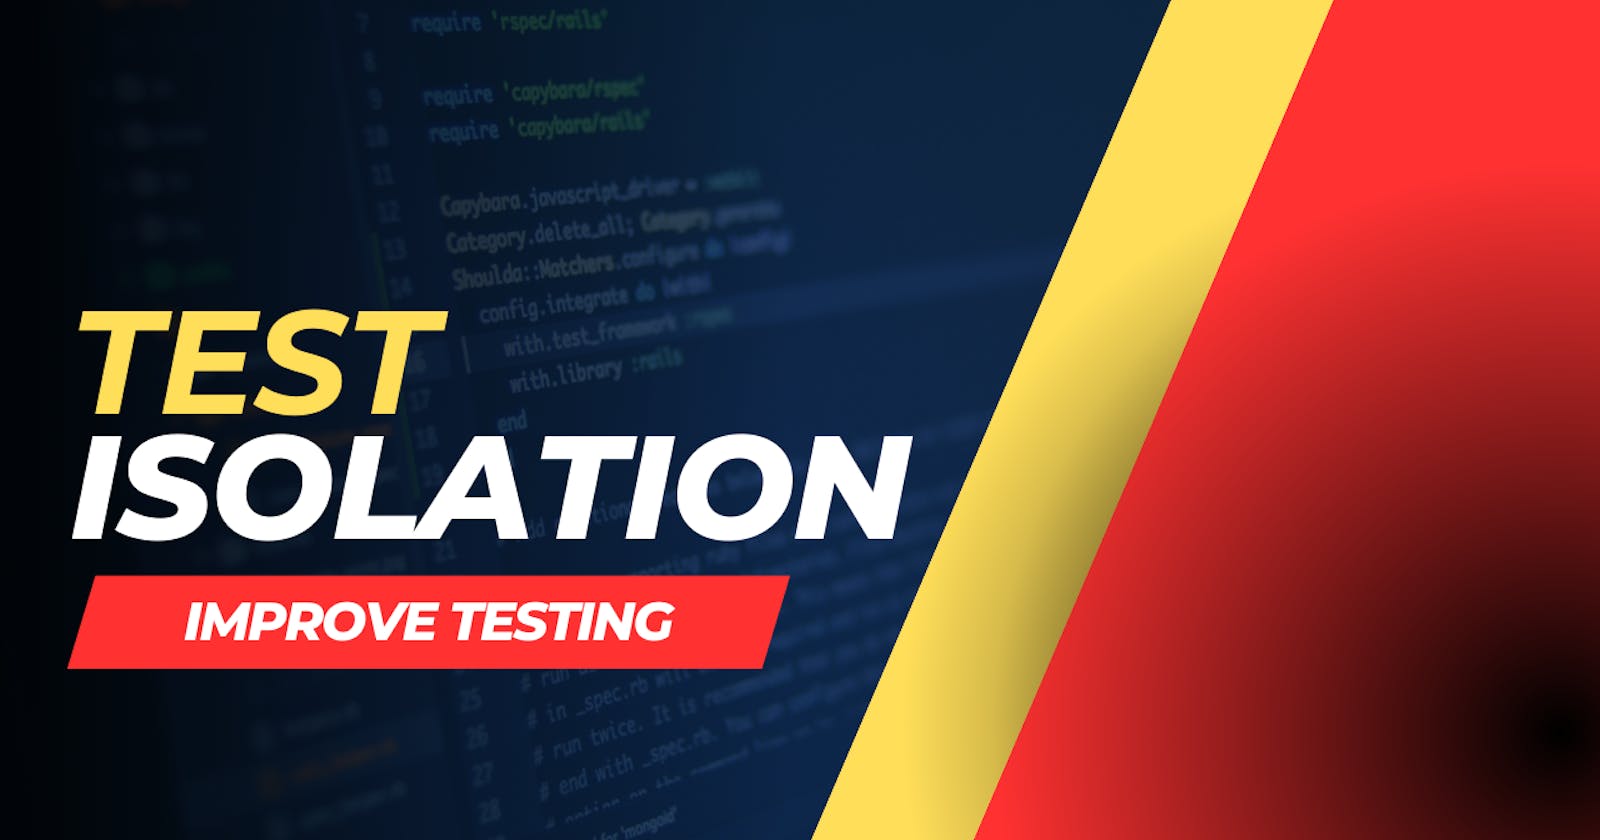 Improve Testing: Test Isolation